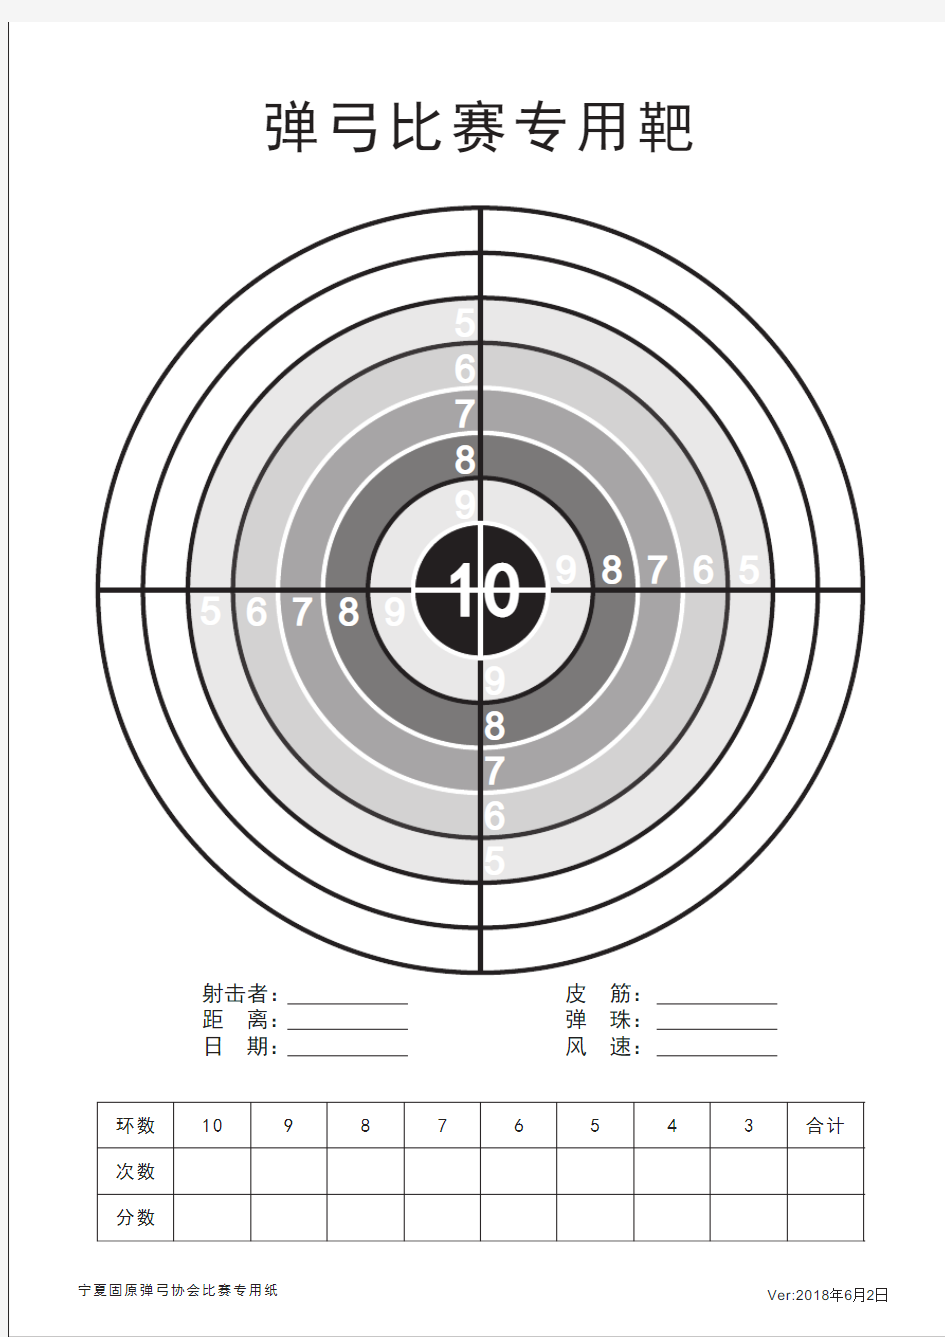 弹弓比赛练习专用靶(A4纸)